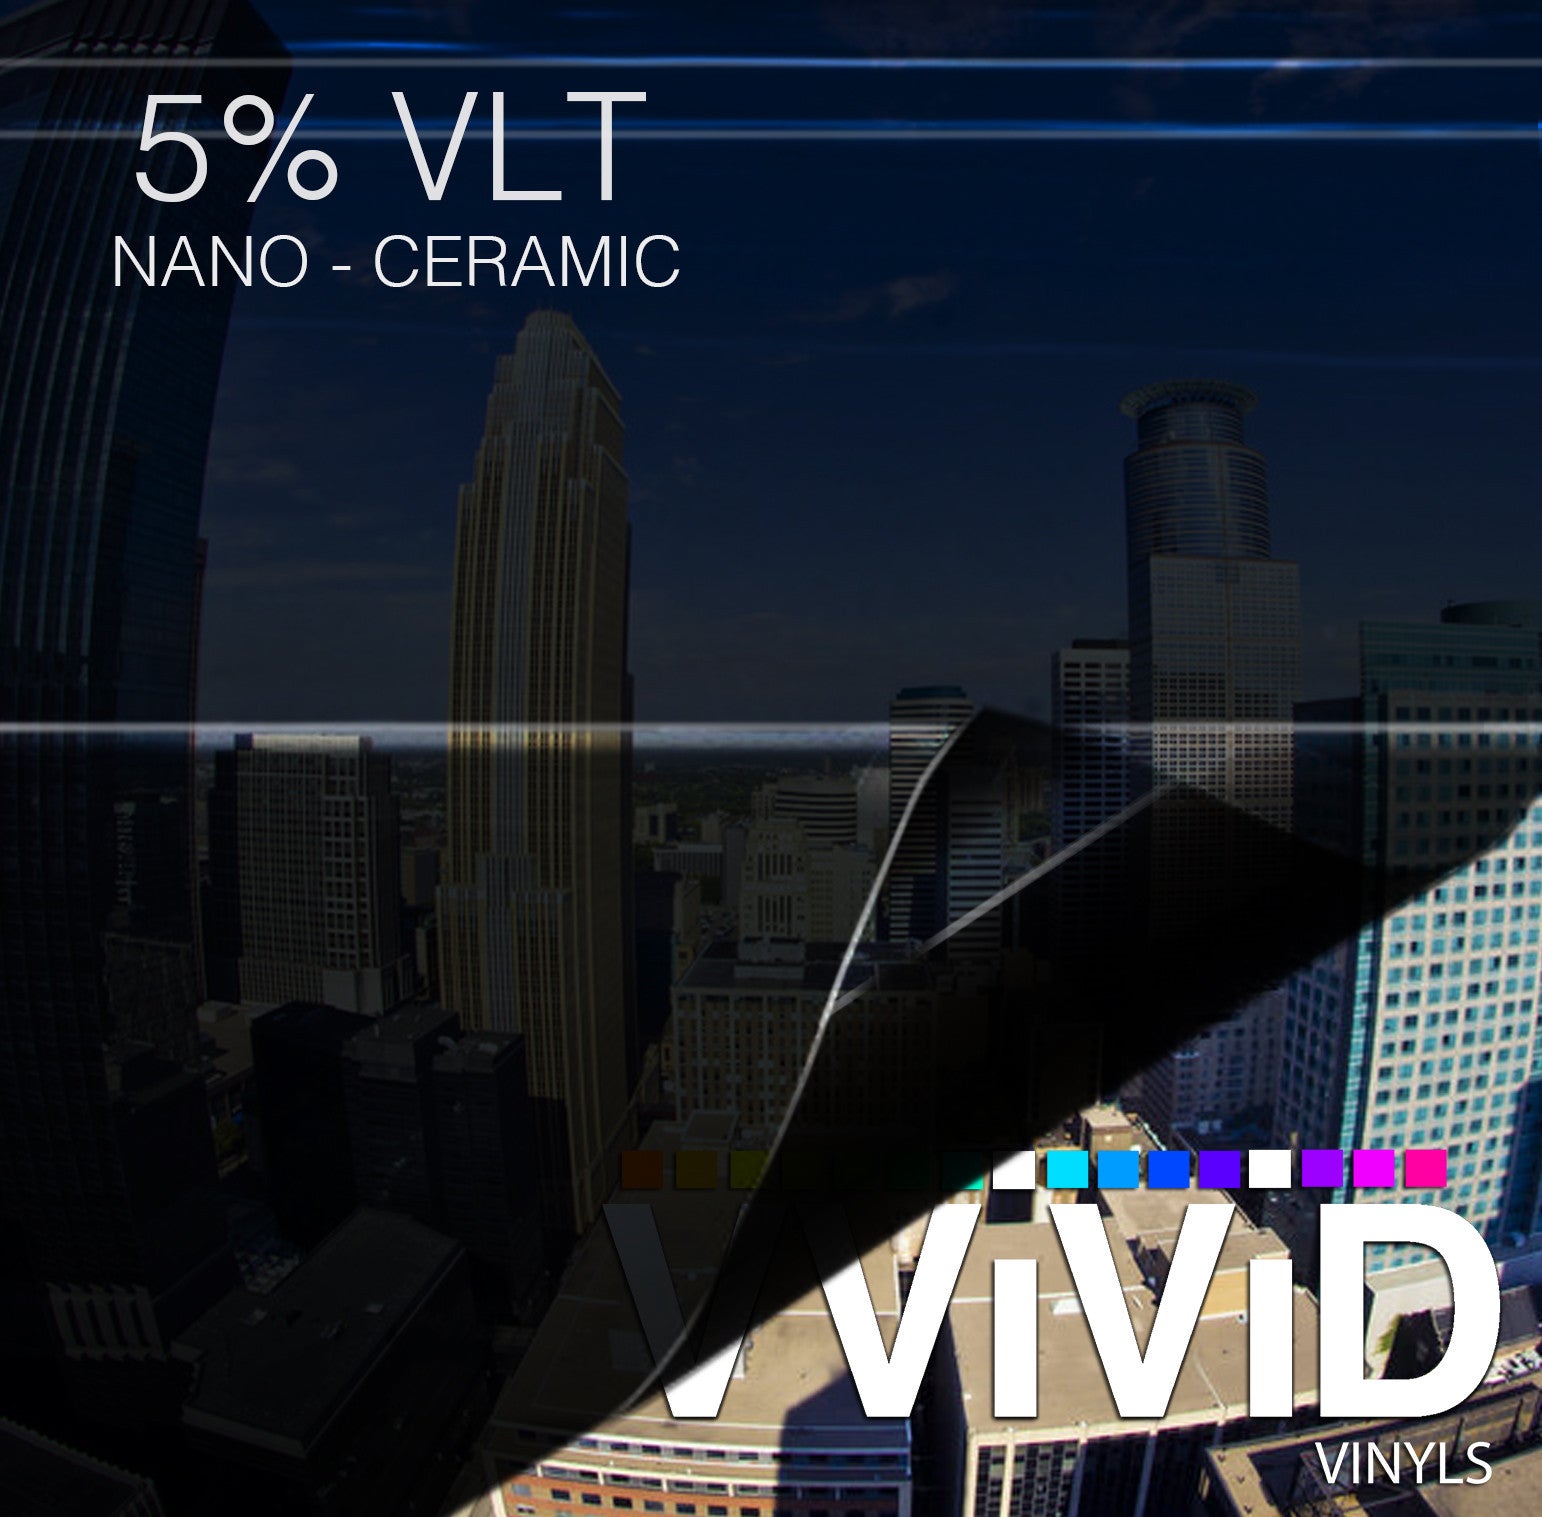 VViViD OPTIC Nano Ceramic Window Tint 5% VLT | Vvivid Canada